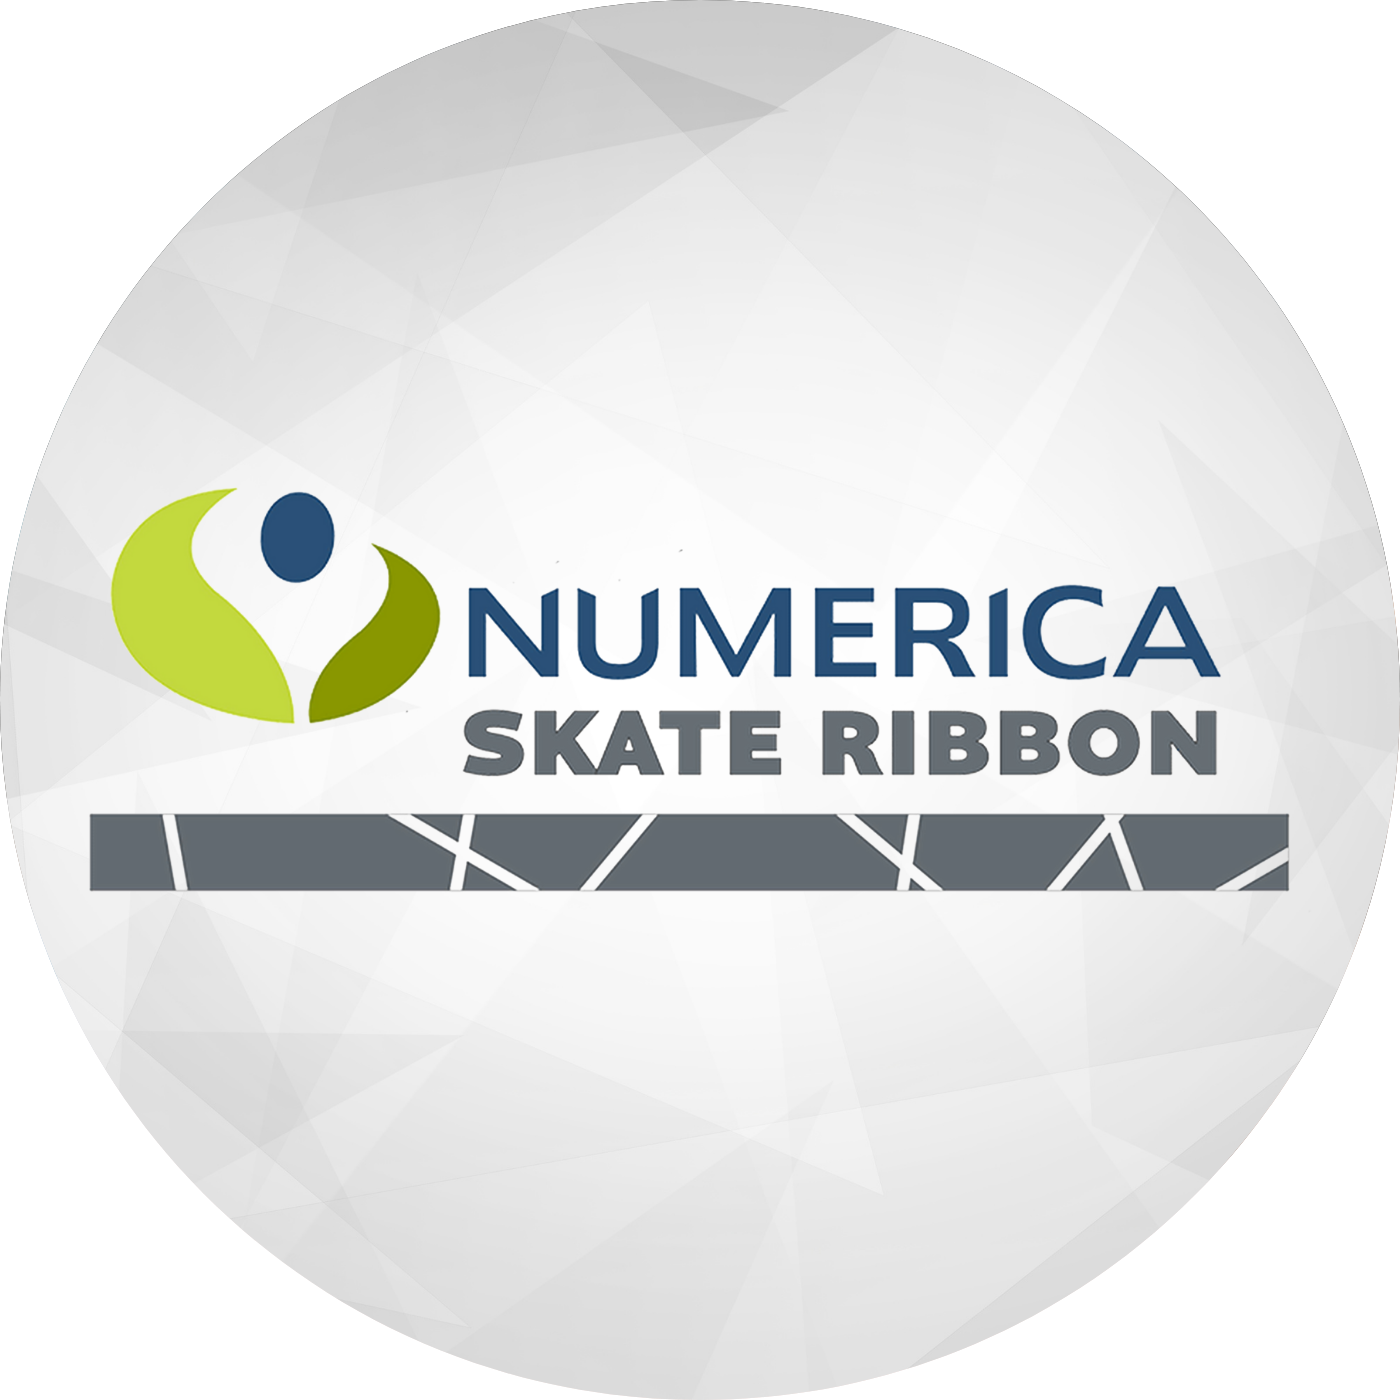 Numerica Skate Ribbon